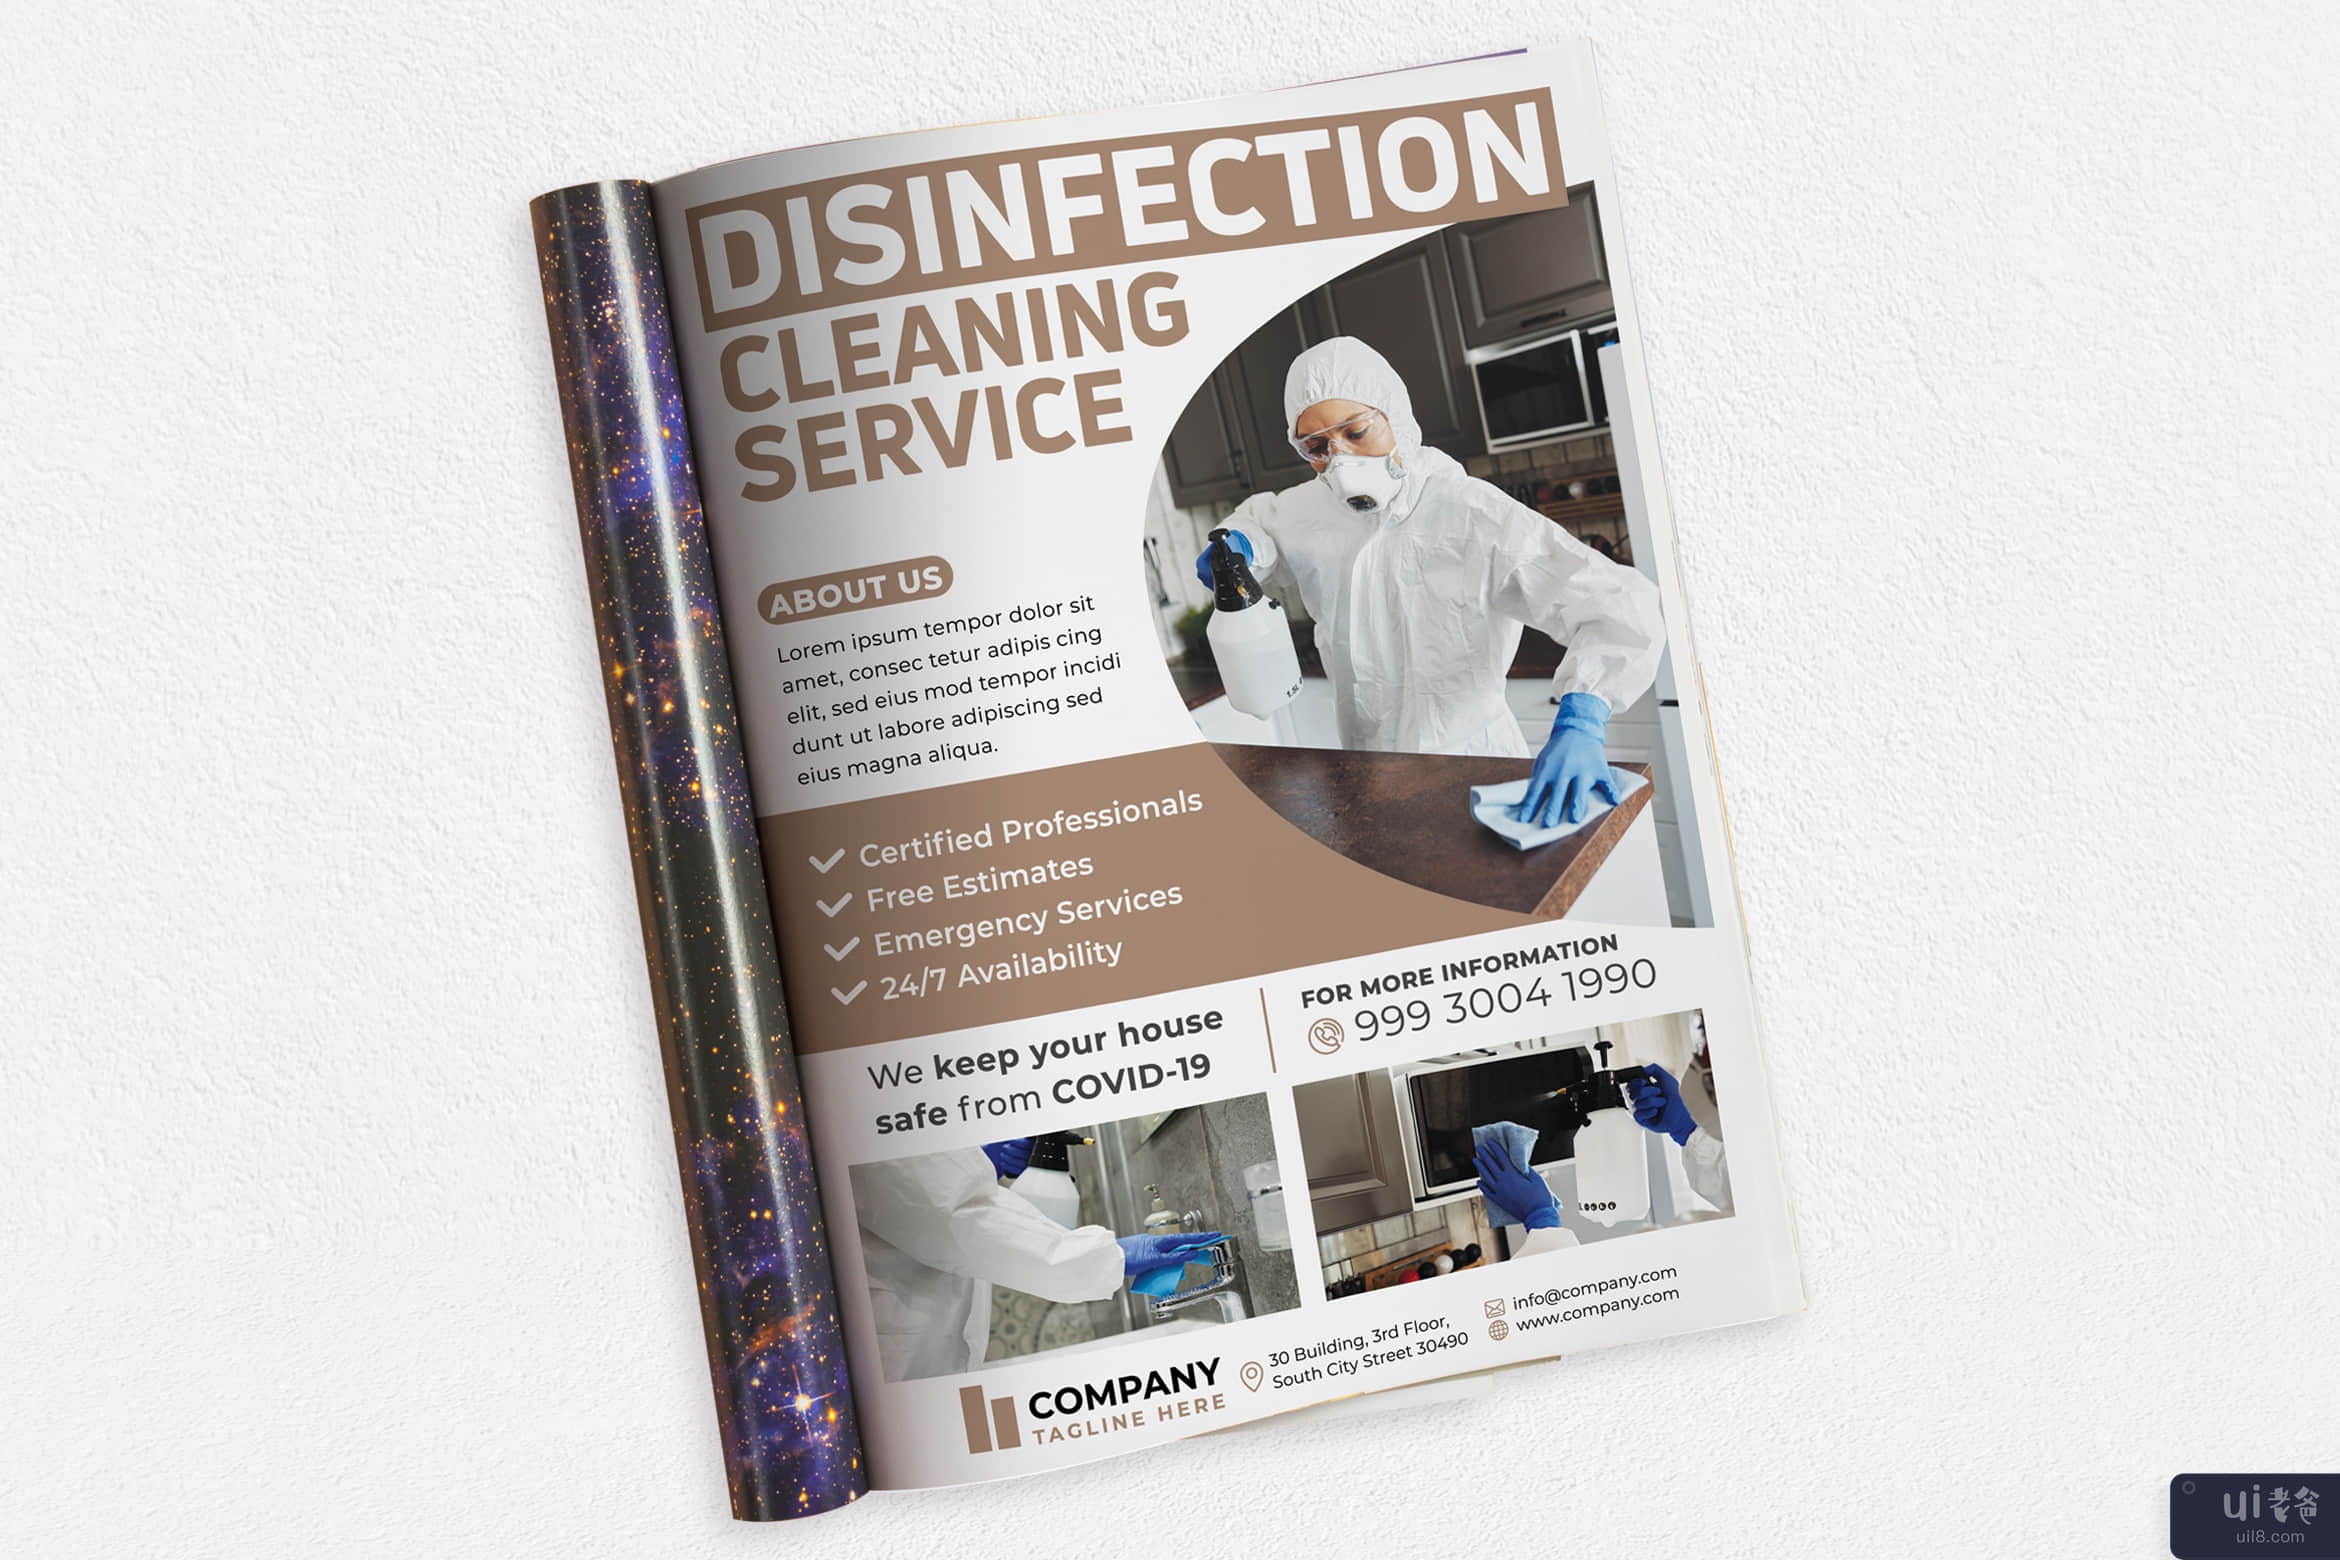 清洁服务 #01 广告杂志(Cleaning Service #01 Ads Magazine)插图2